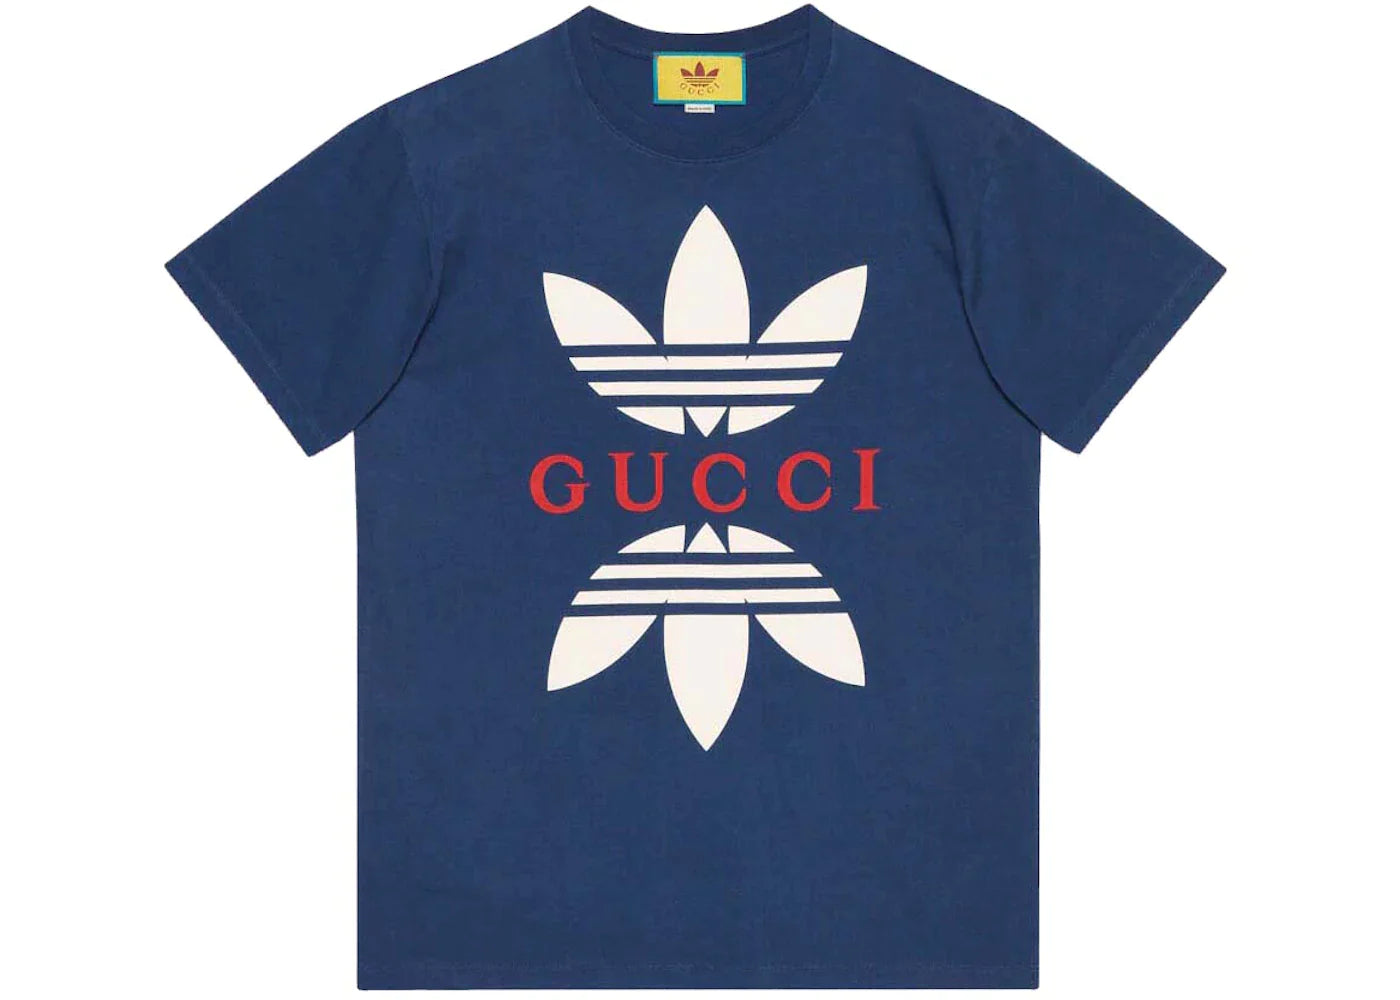 Gucci x adidas Cotton Jersey T-Shirt Cobalt Blue